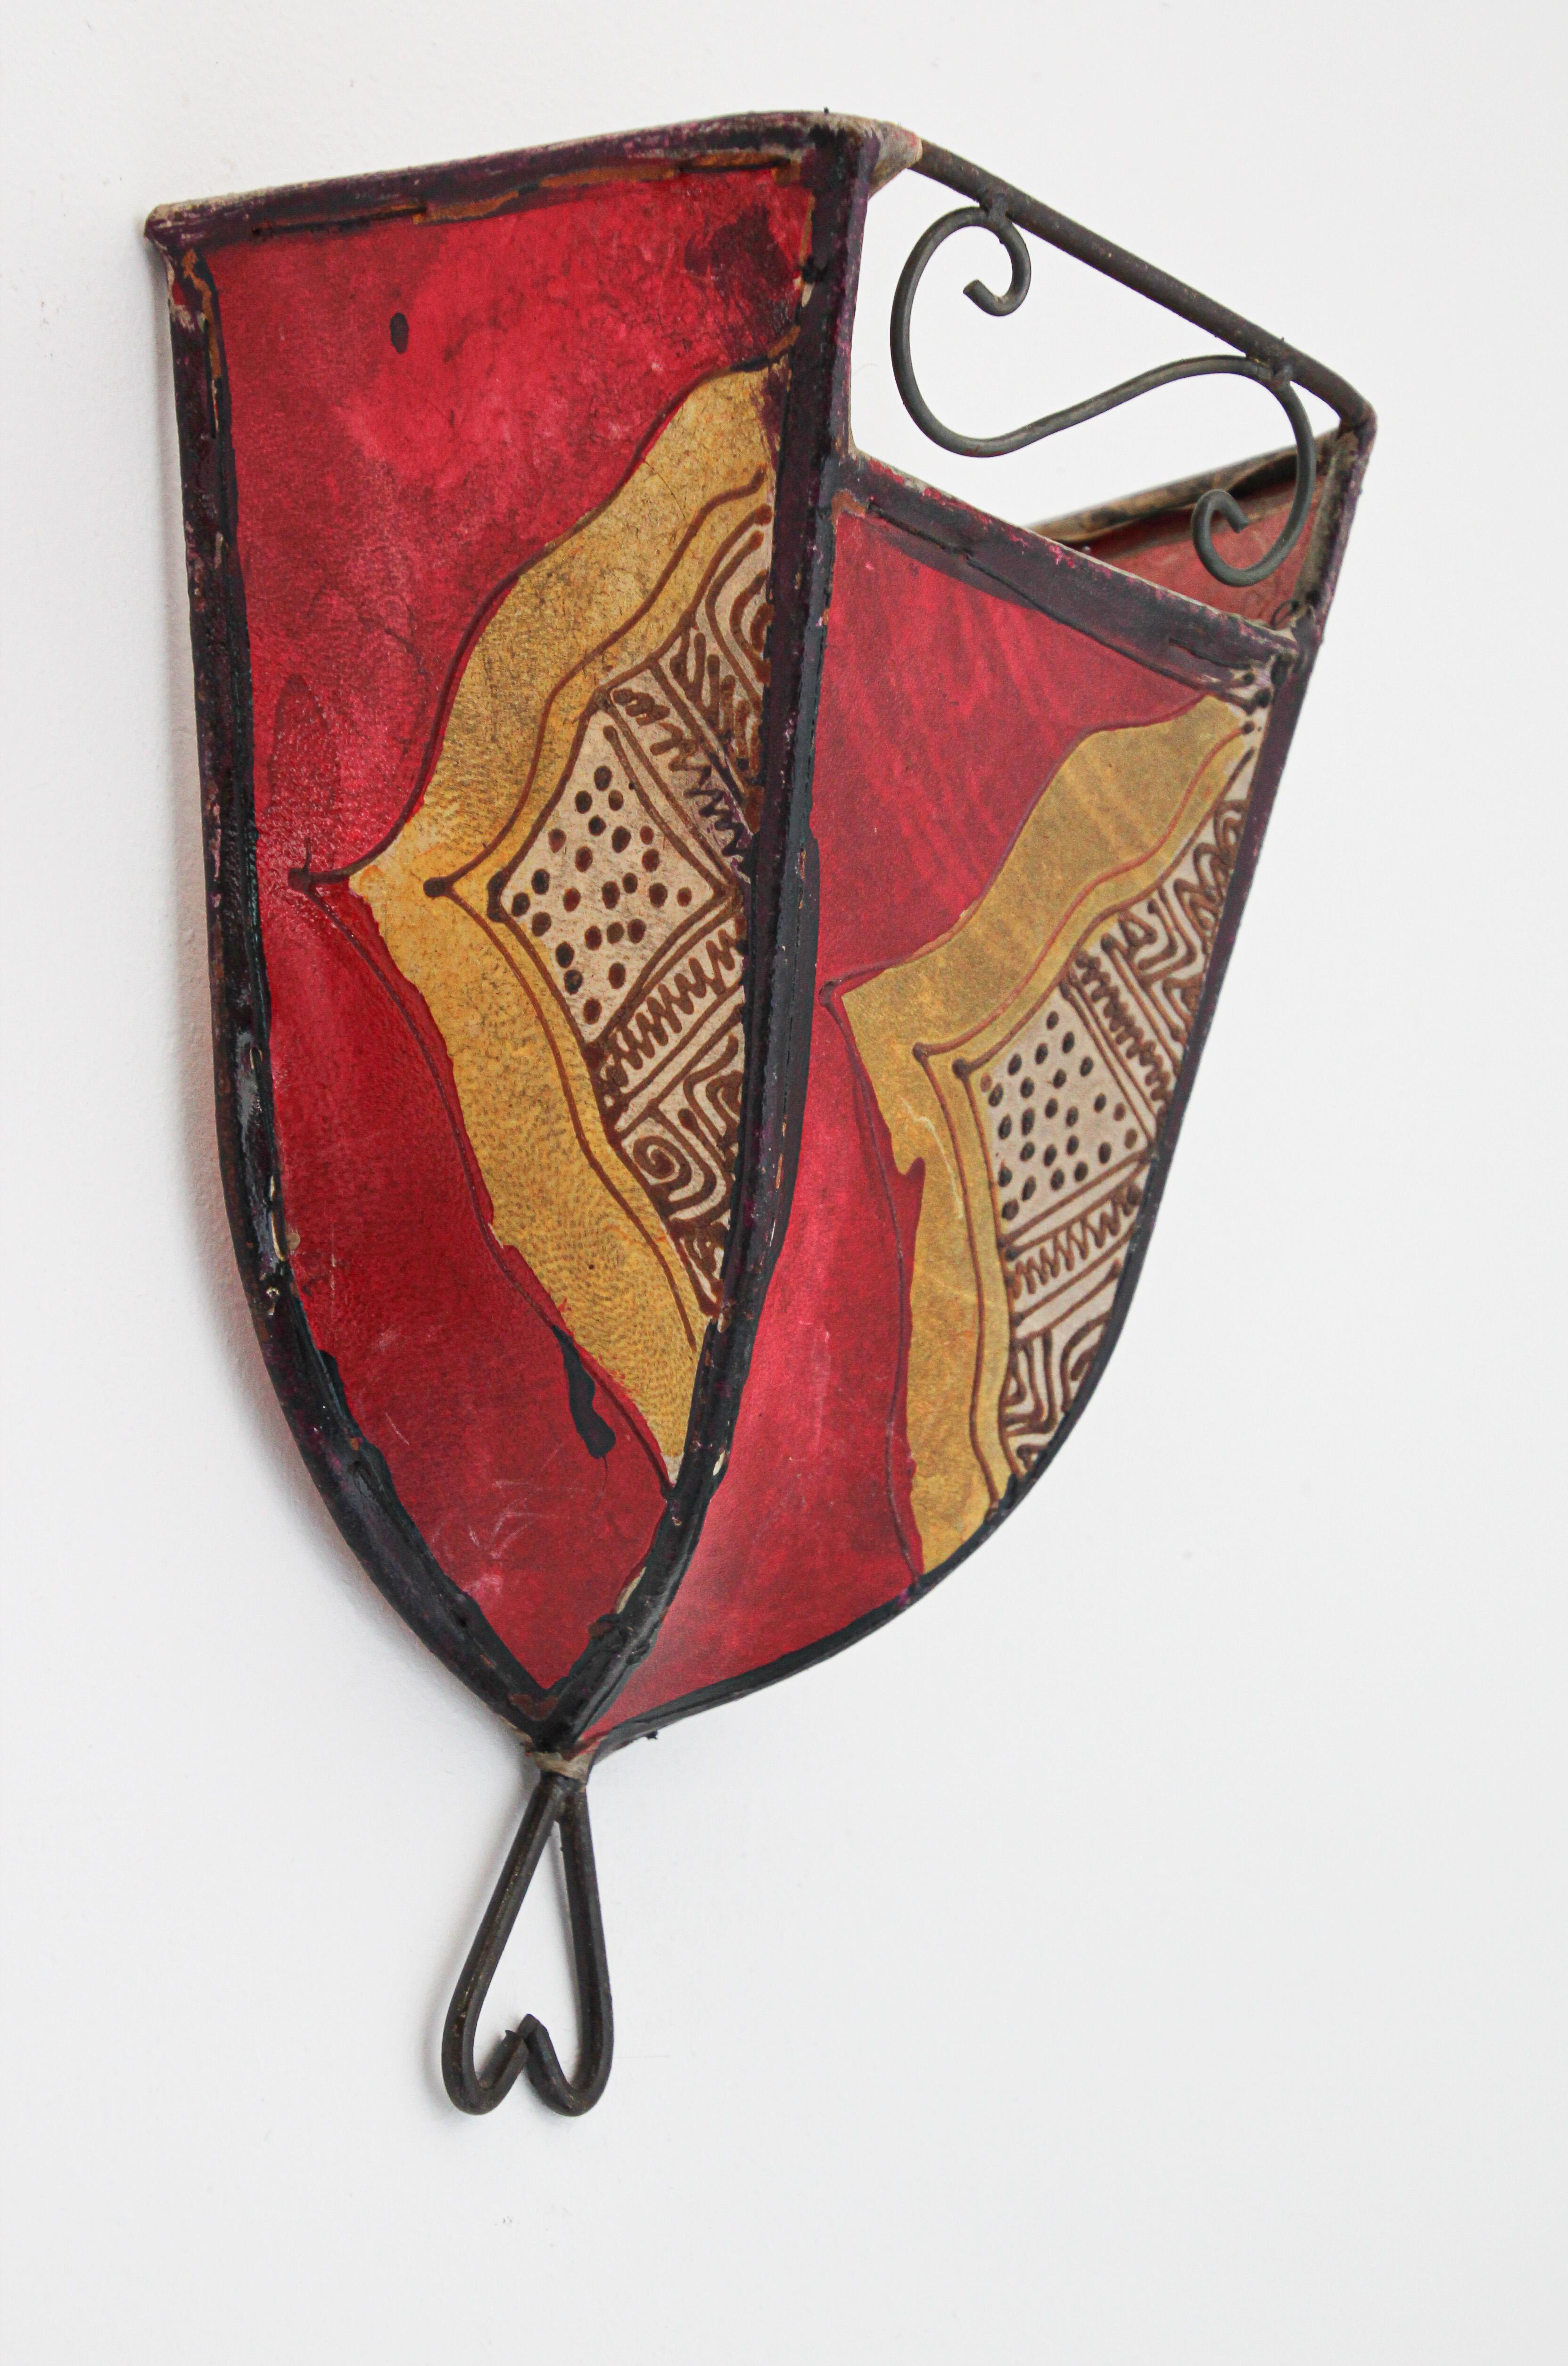 Afrikanische Stammeskunst Pergament Wandleuchte mit einer großen geschwungenen Form aus Leder auf Eisen genäht und handbemalt Oberfläche.
Diese marokkanischen Kunstwerke können als Lampenschirm für die Wand verwendet werden.
Der mit Pergament